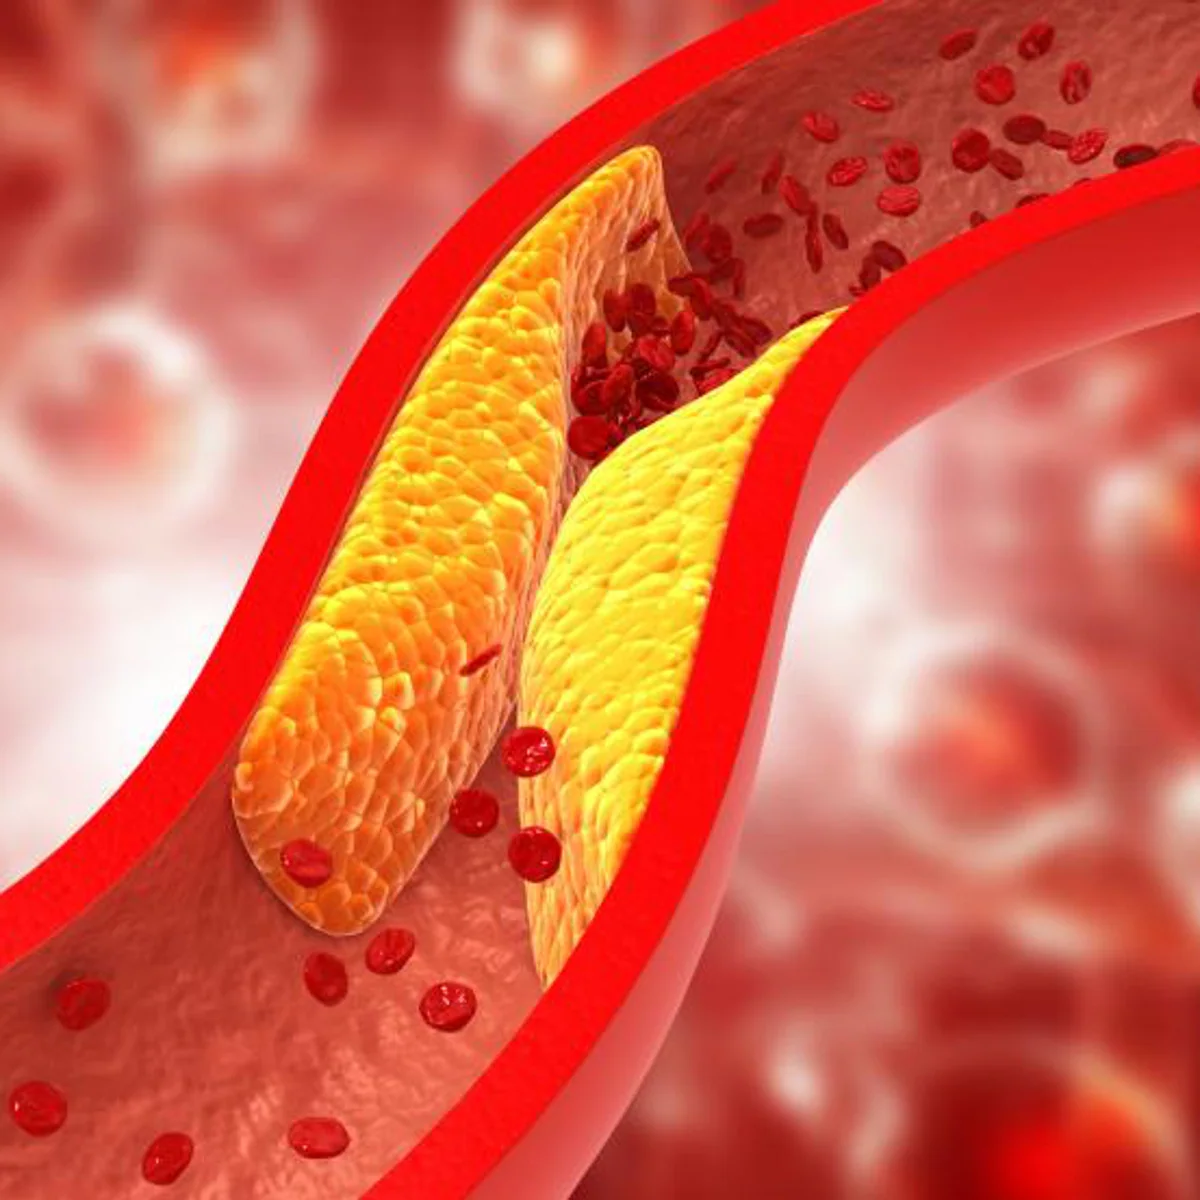 Recreación de una arteria obstruida por placas de colesterol